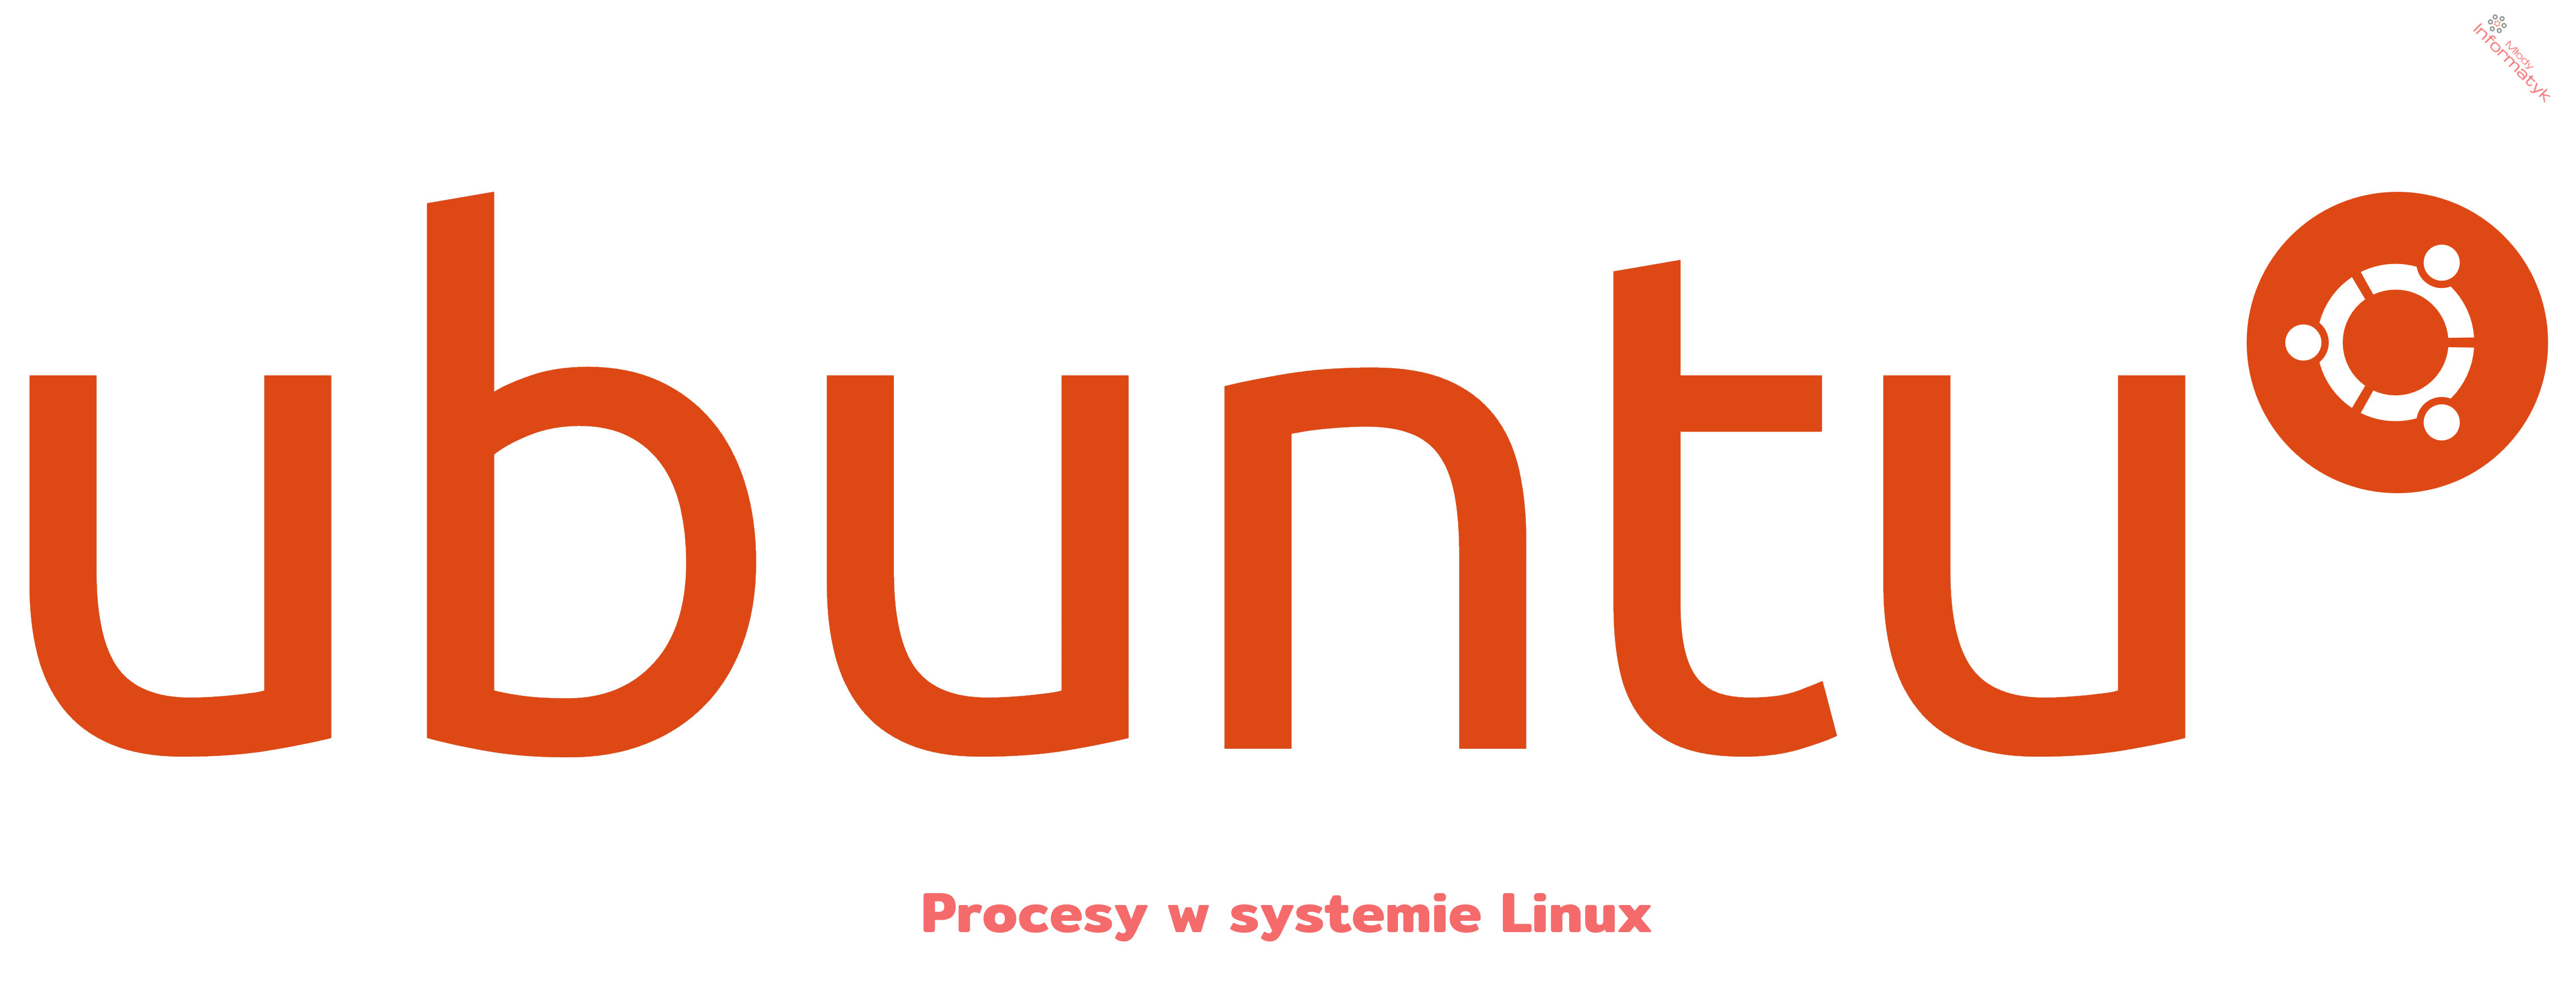 Procesy w systemie Linux